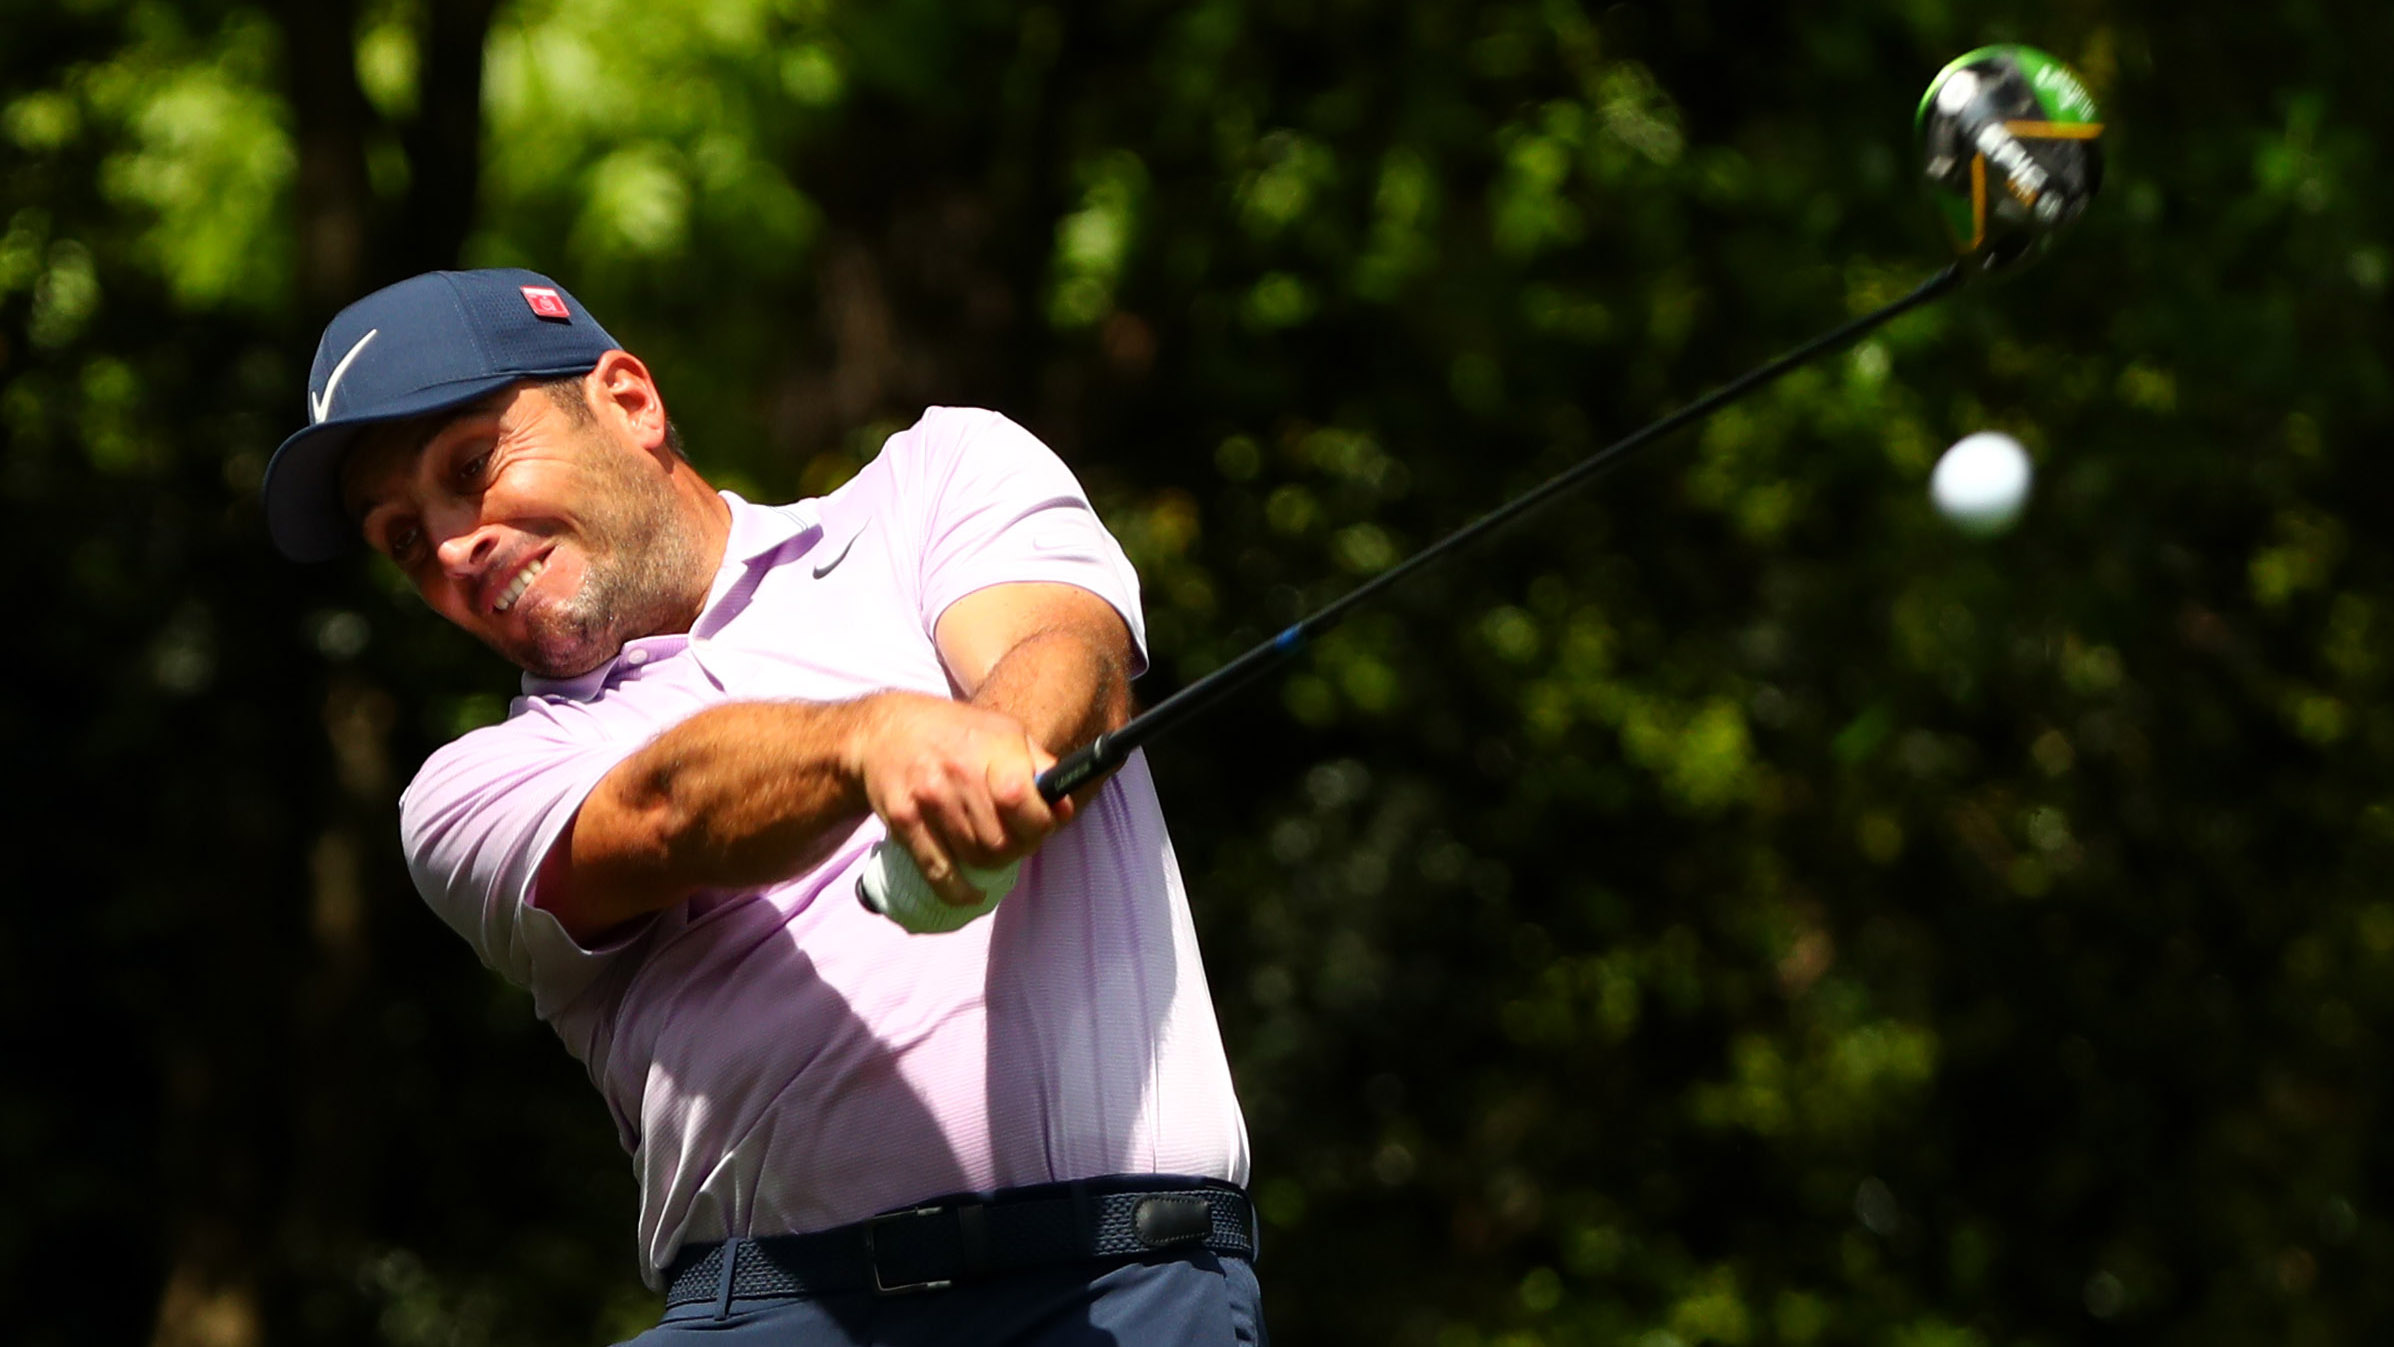 Francesco Molinari builds 2-shot lead over Tiger Woods, Tony Finau at 2019 Masters